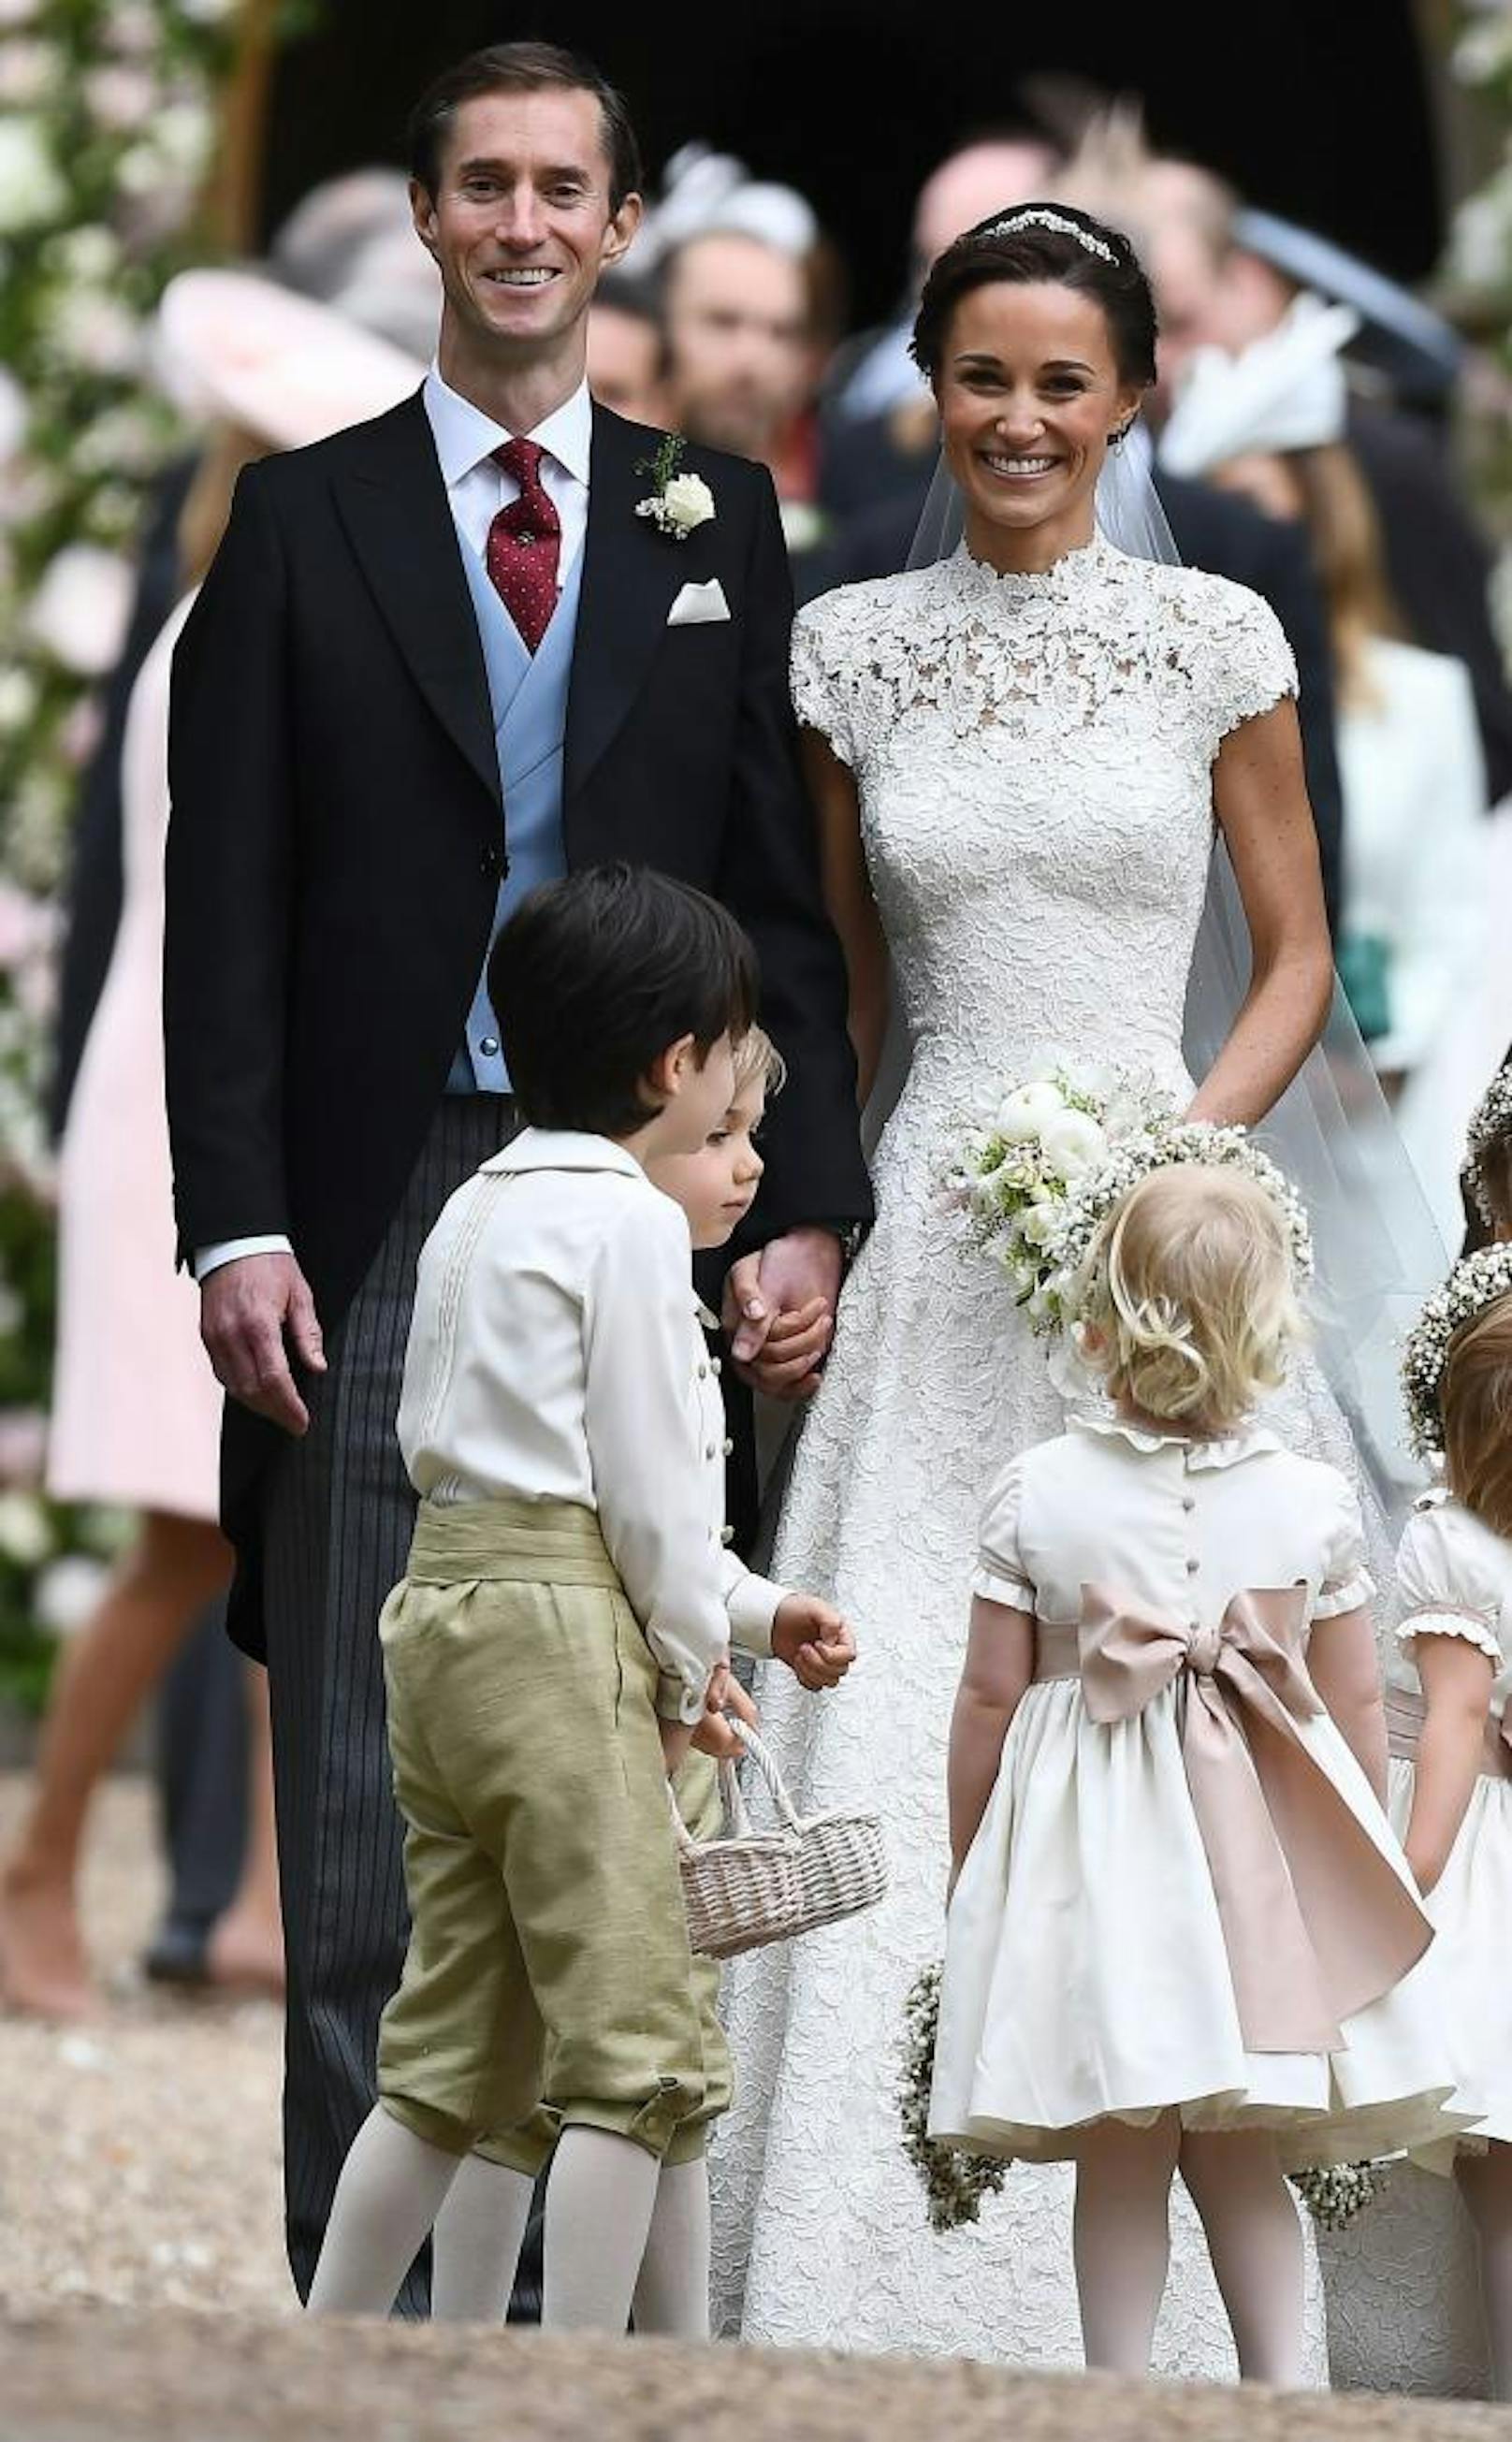 Das frischvermählte Brautpaar Pippa Middleton und James Matthews verlässt die Kirche.